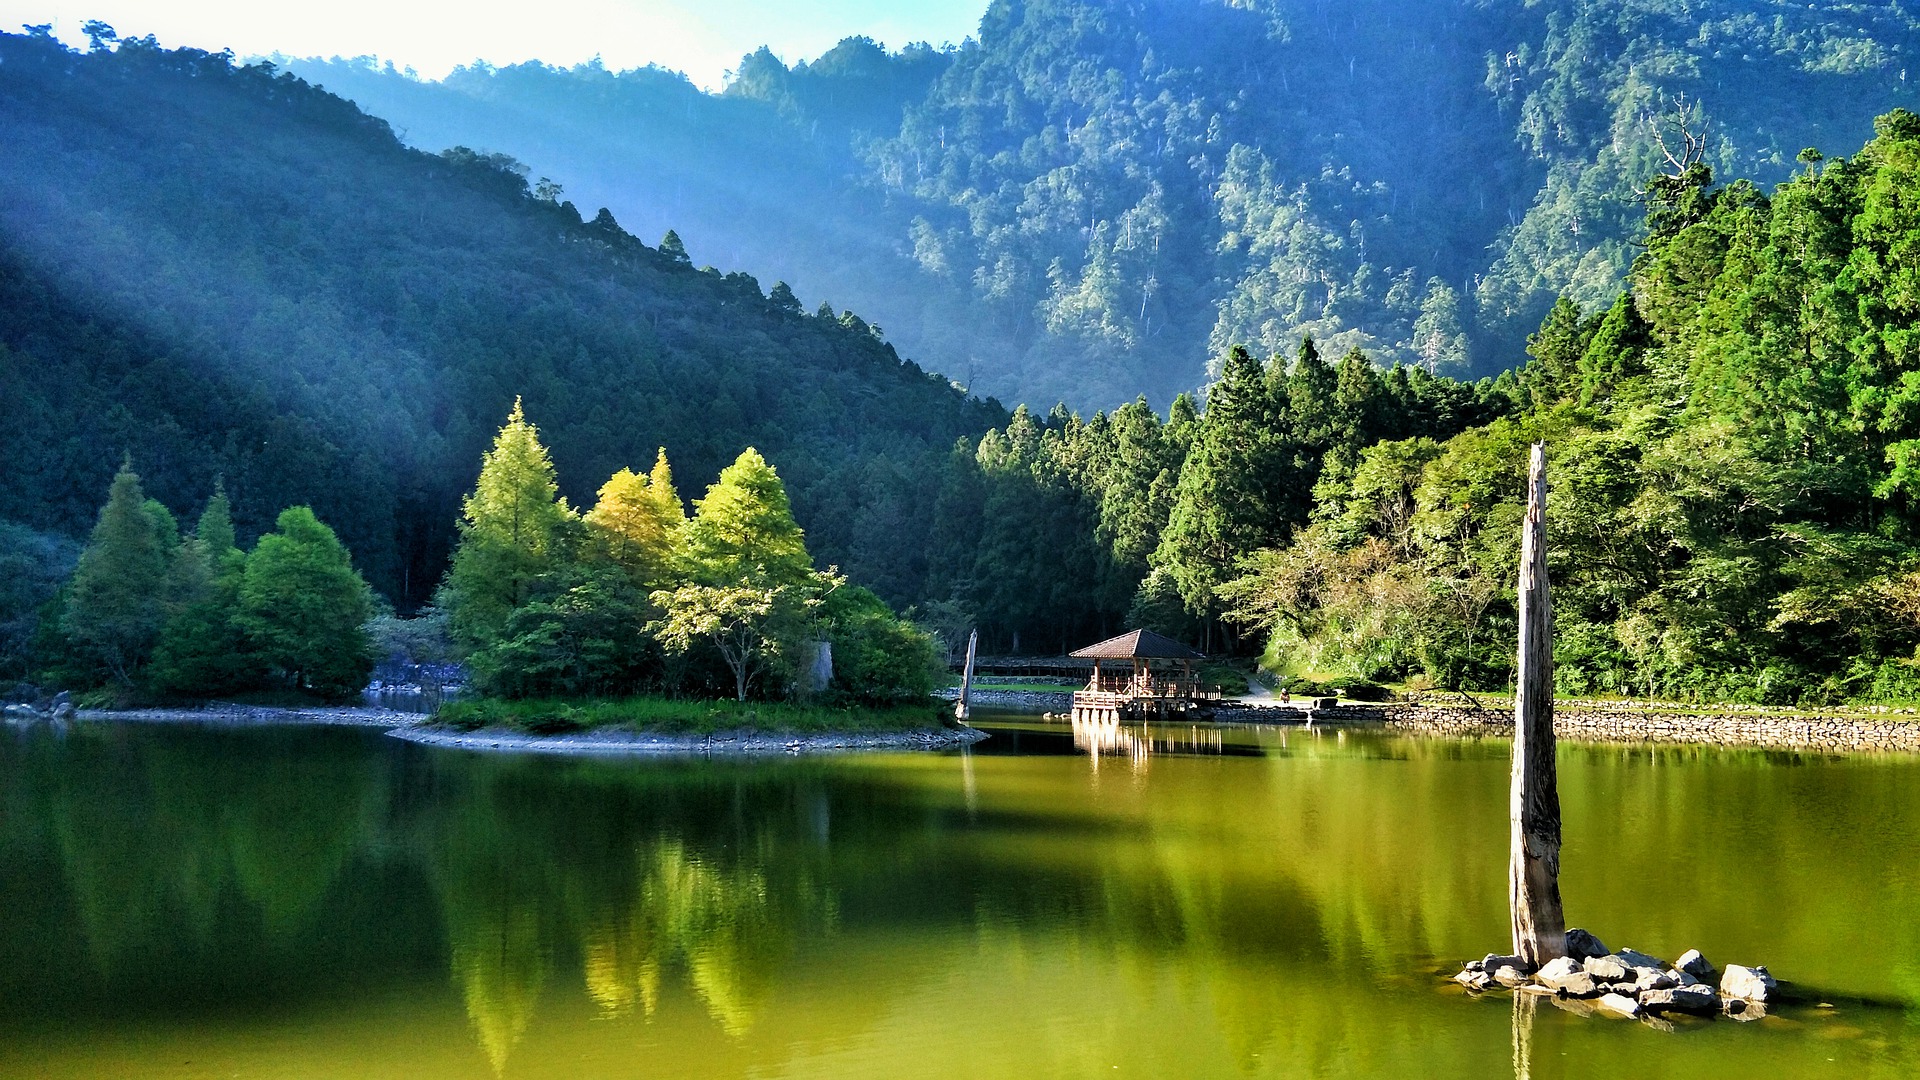 明池,位于台湾宜兰县大同乡英士村,景区内有茂密的森林,是北橫公路上